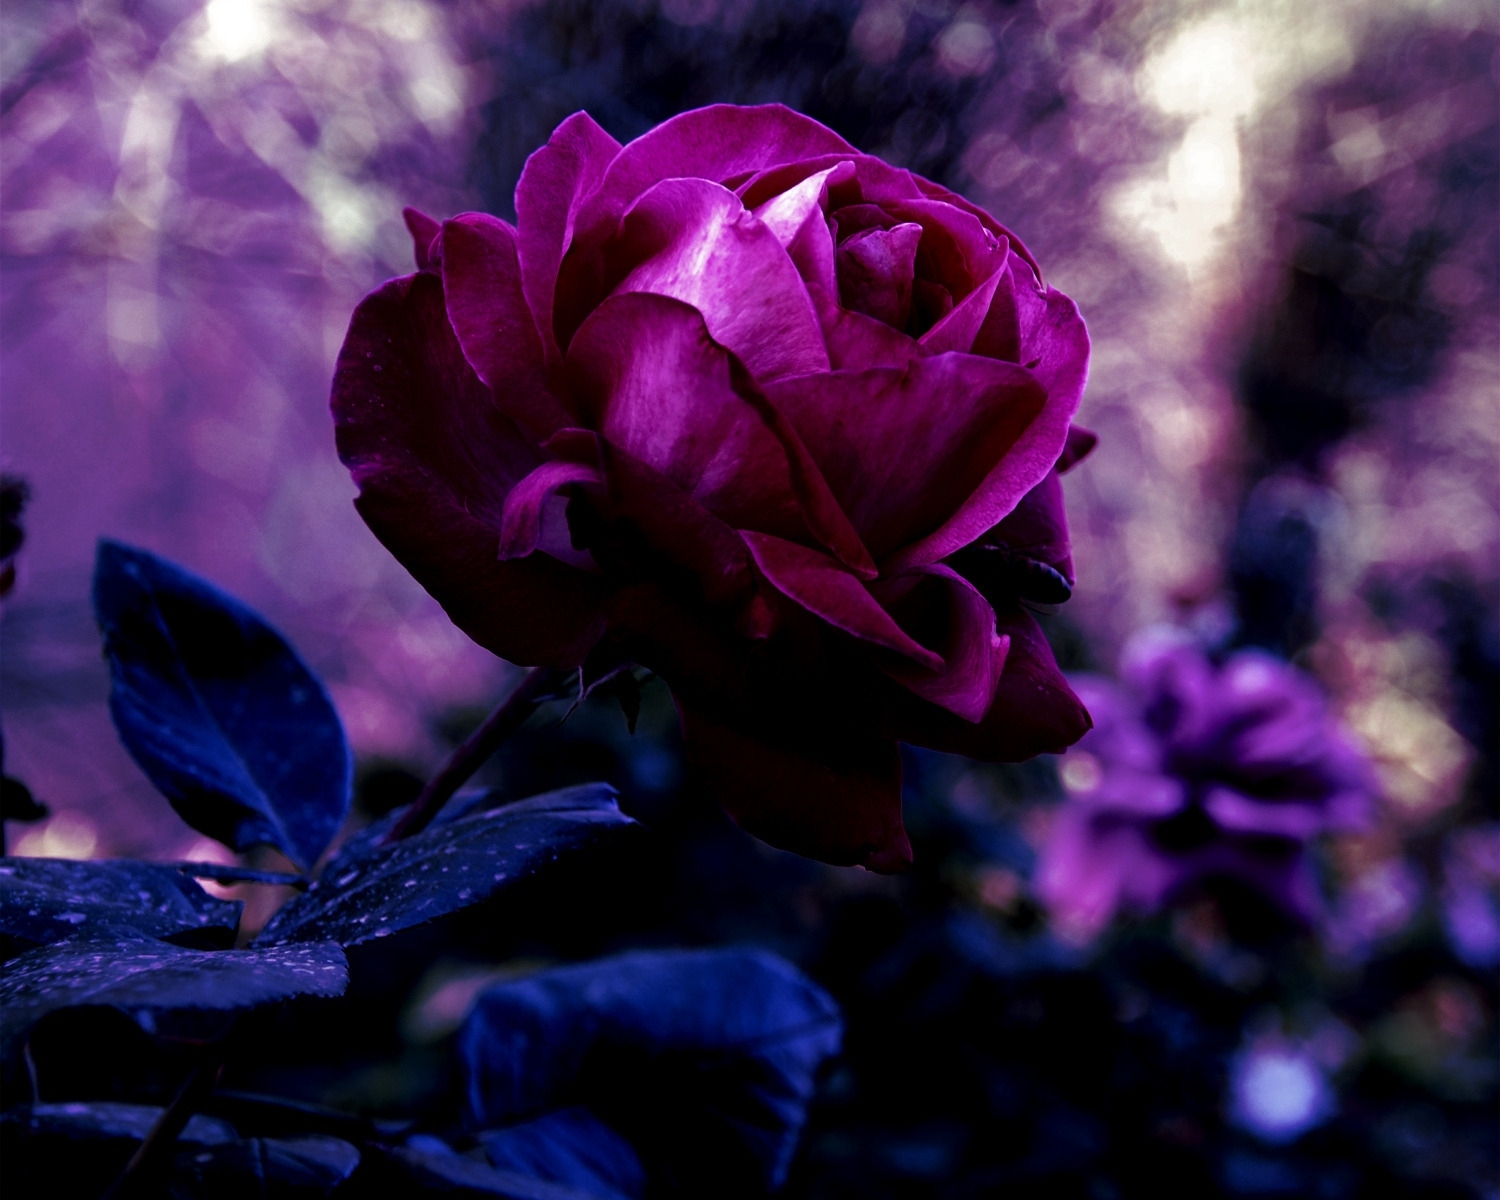 desktop Images rose flower, flowers, drops, rose, bud, blur, smooth, evening